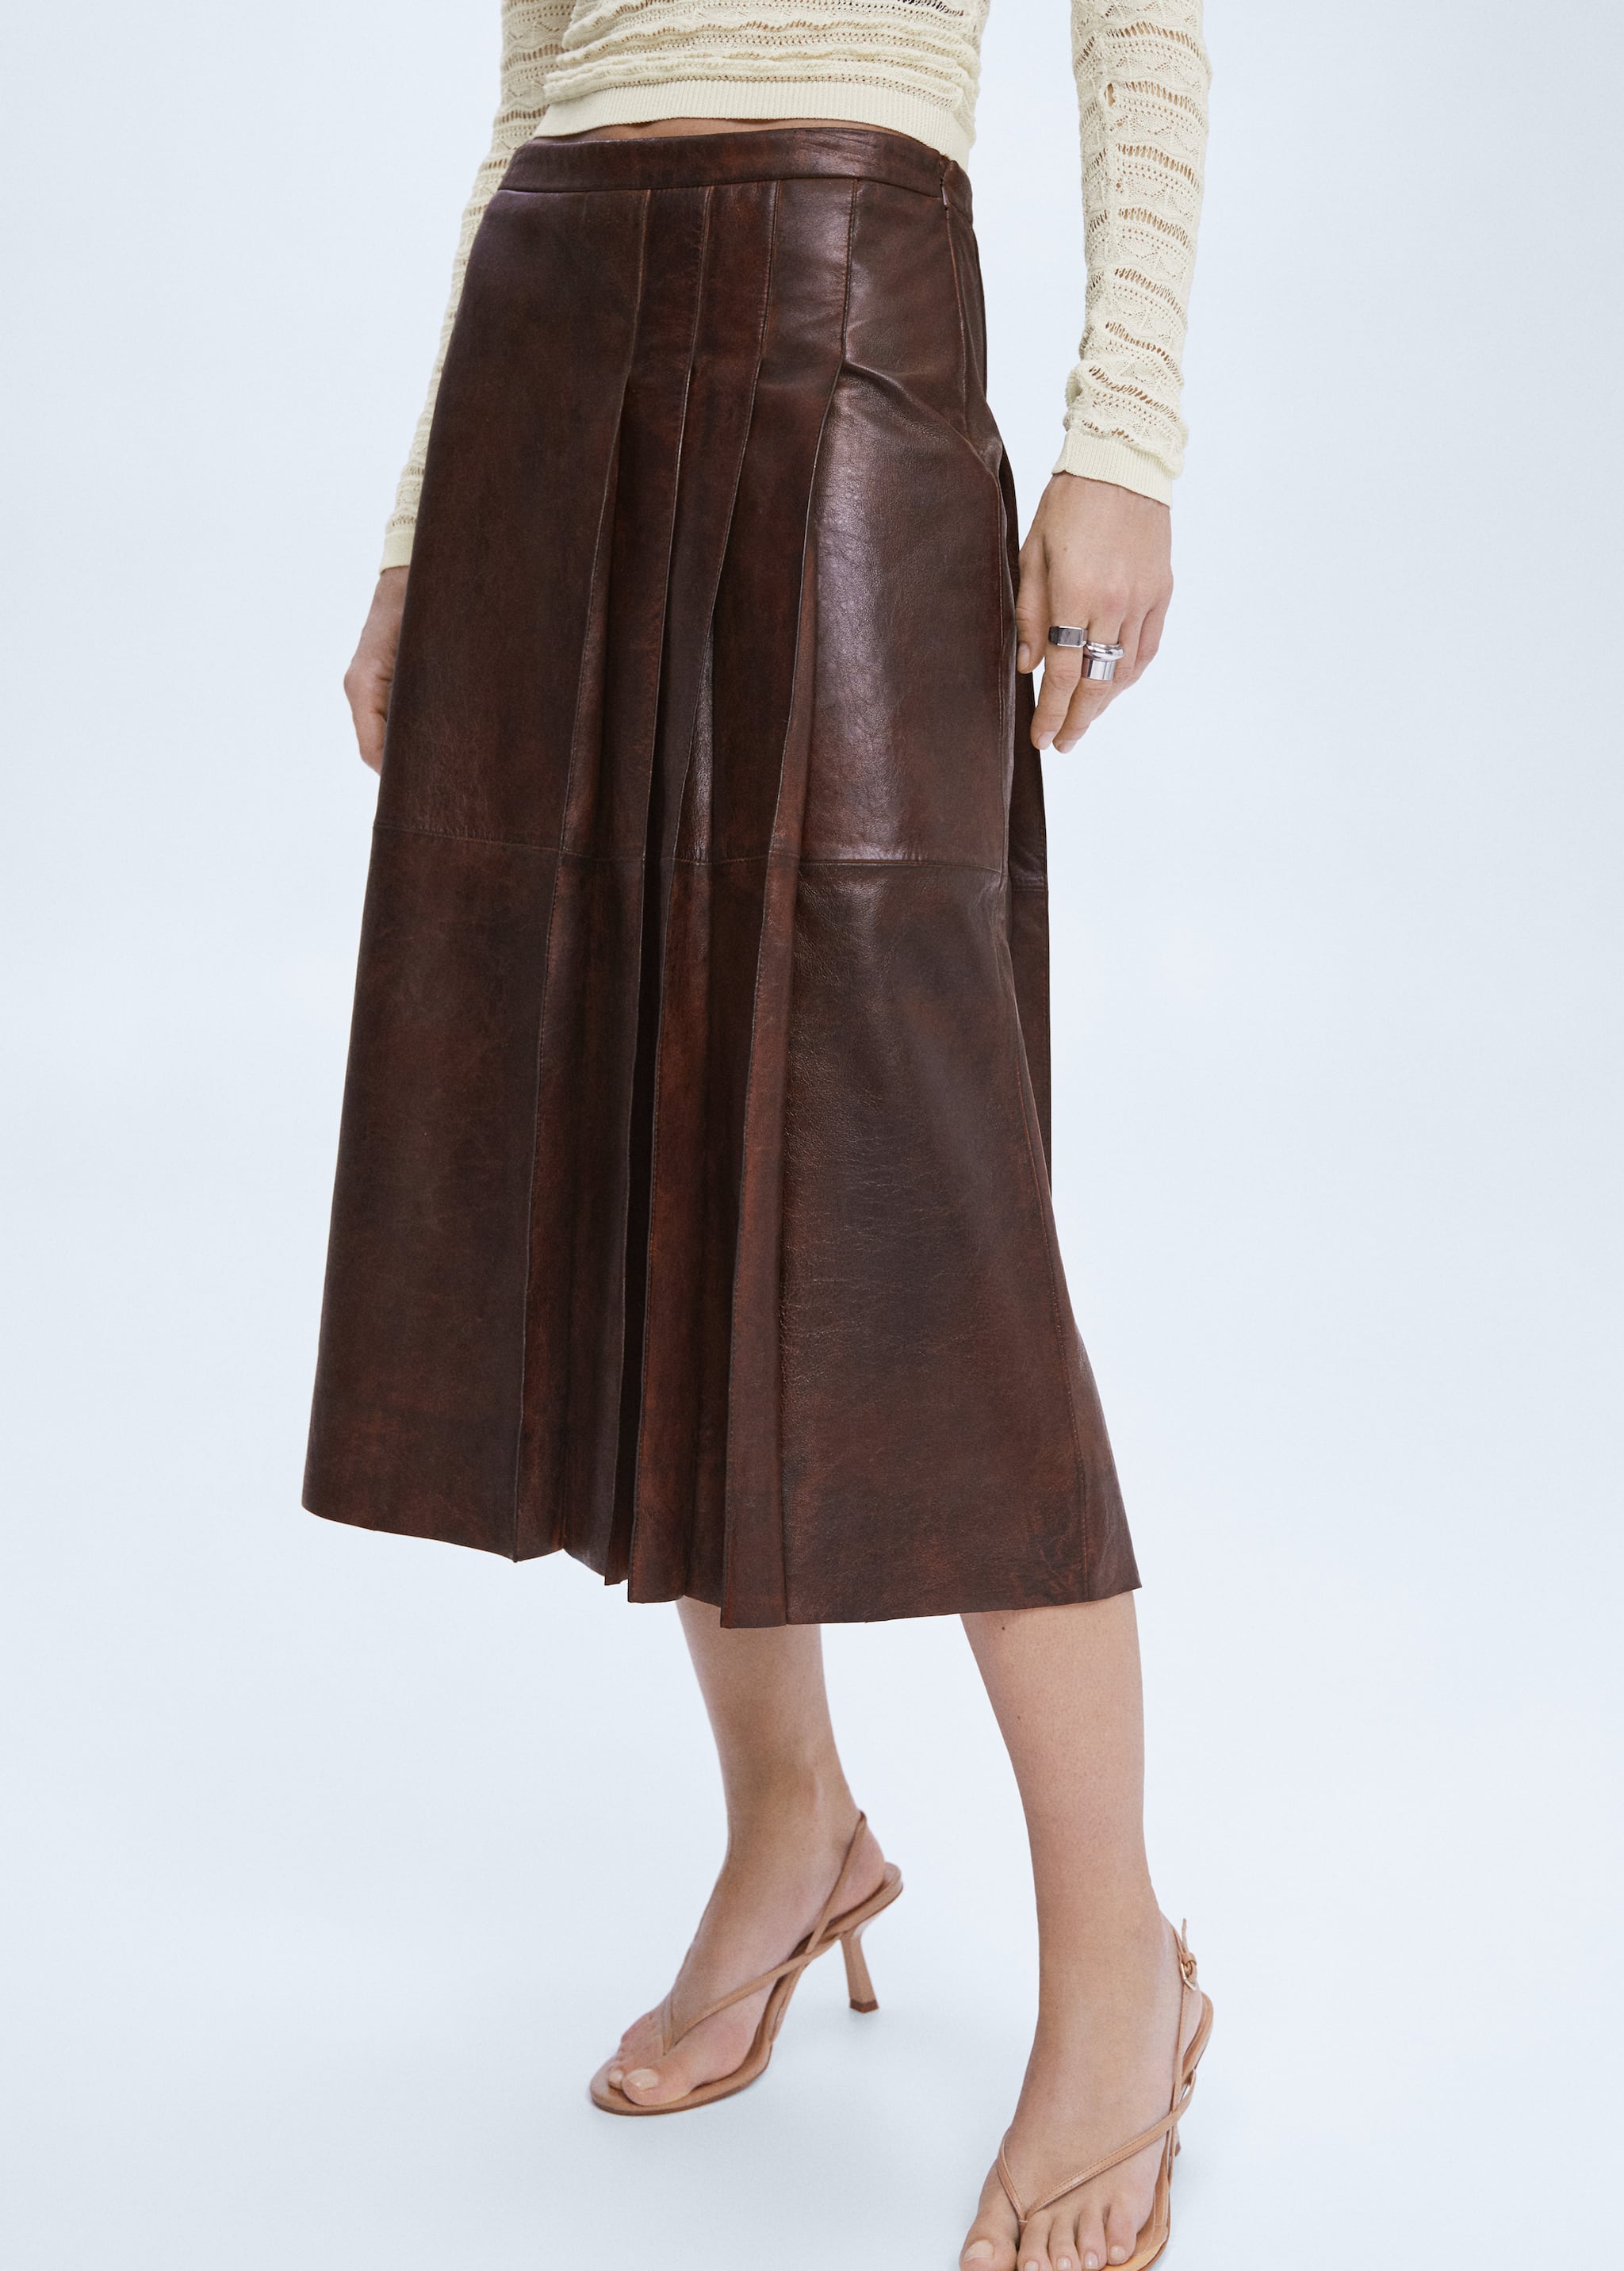 Leather midi-skirt - Medium plane